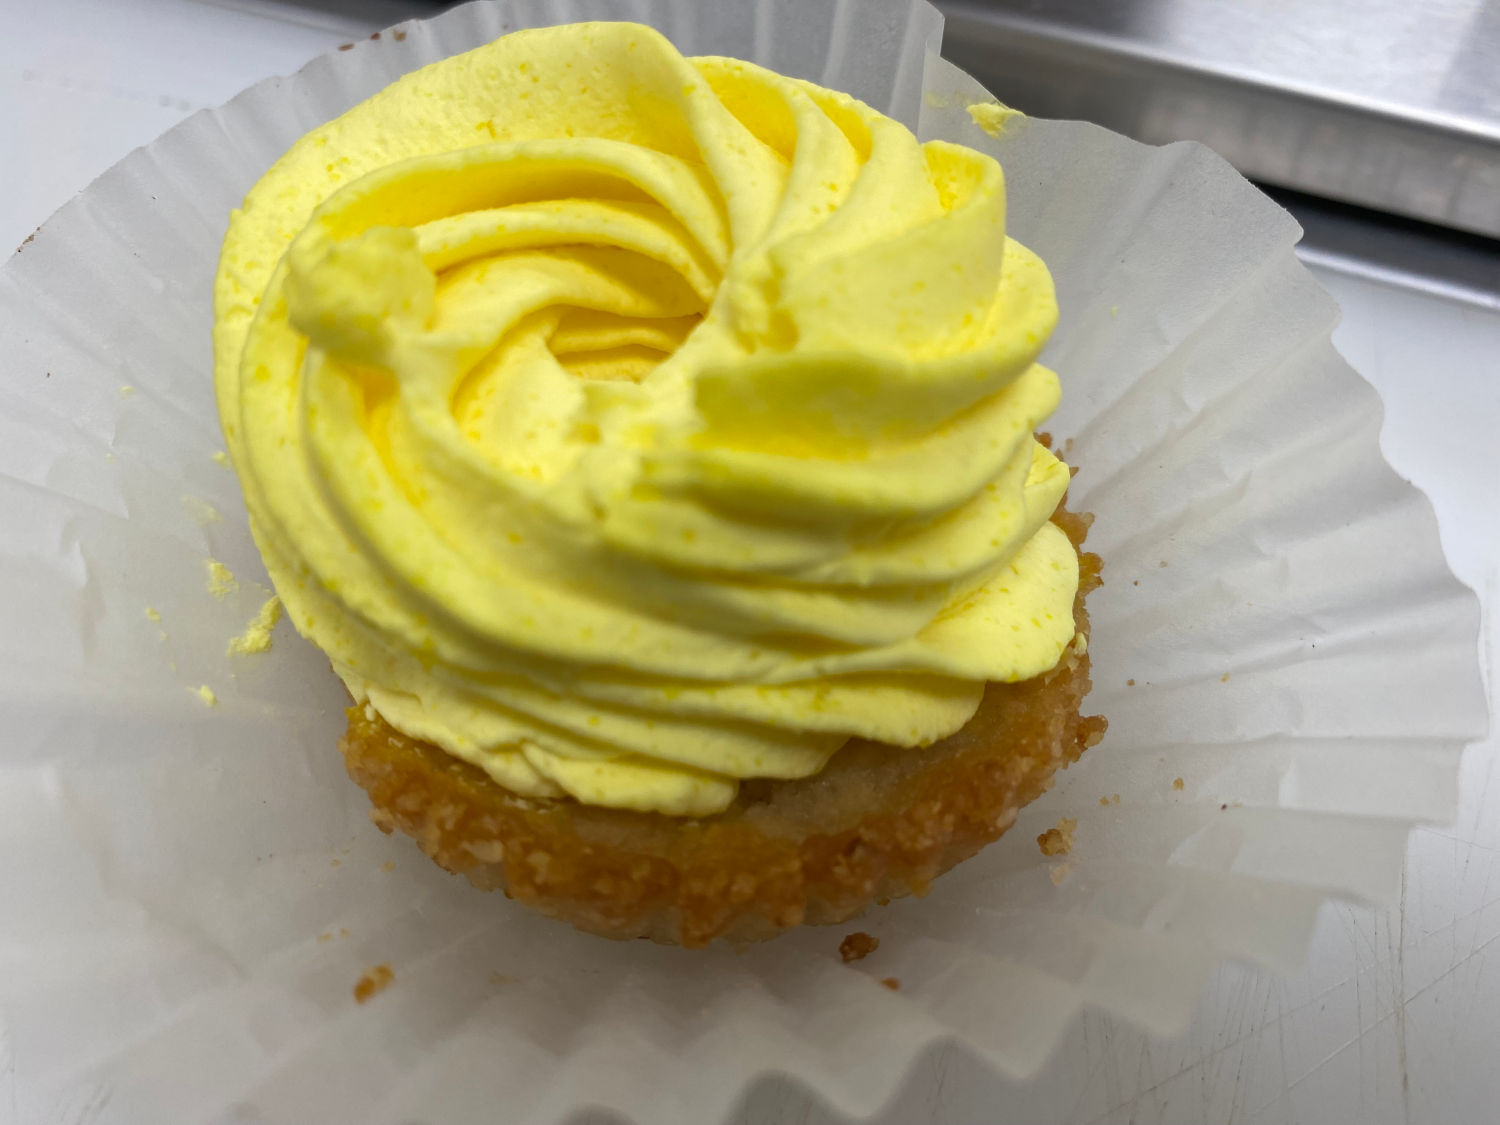 Keto Lemon Cream Pie - Dattolo's Baked Goods